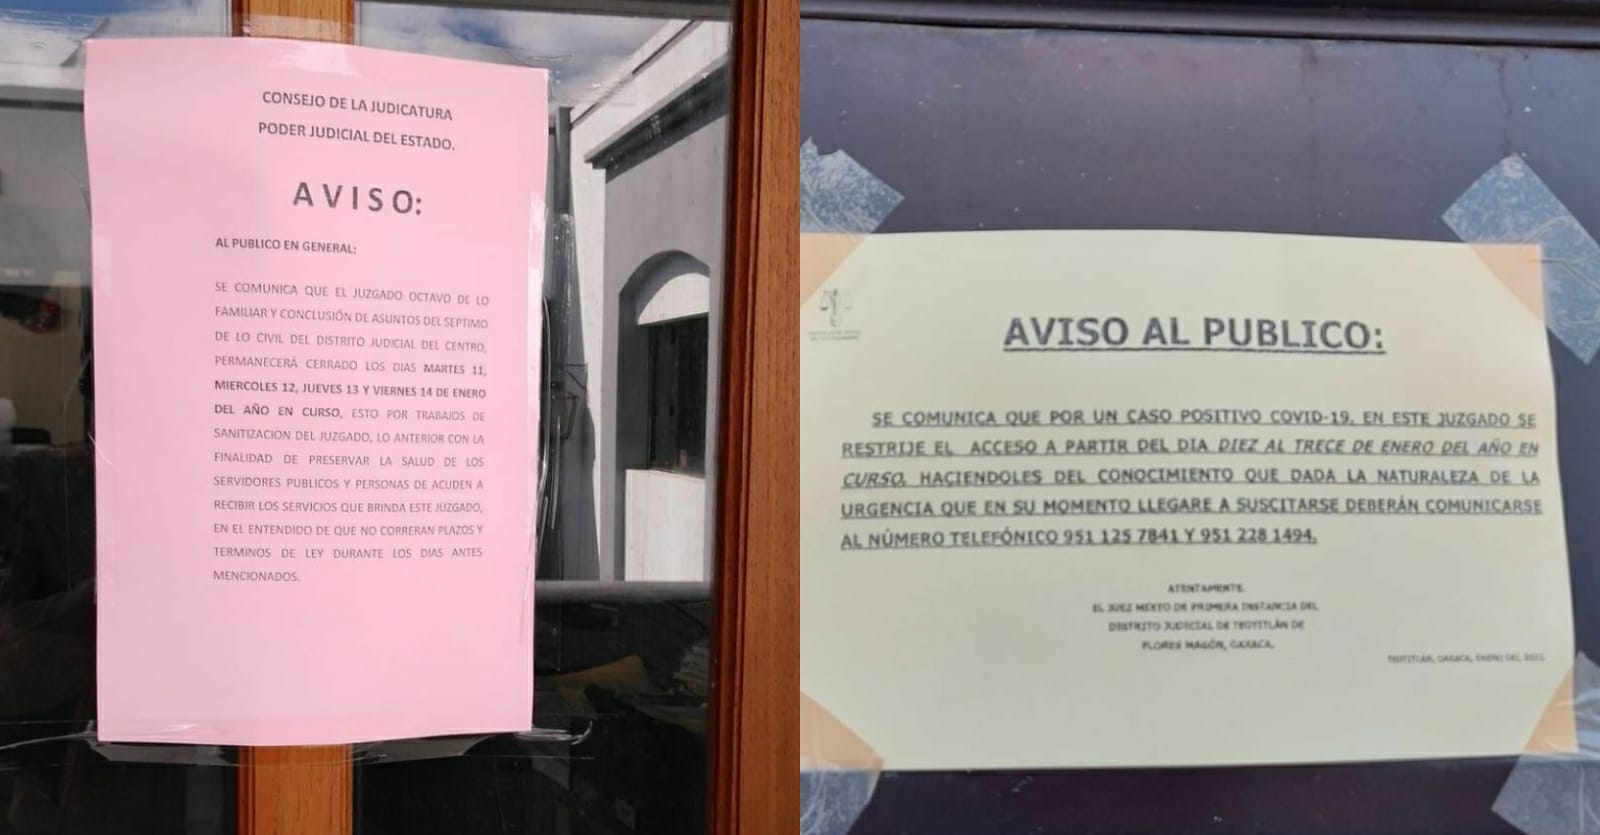 Cuarta ola de la COVID-19 provoca la suspensión de actividades en 2 juzgados de Oaxaca | El Imparcial de Oaxaca